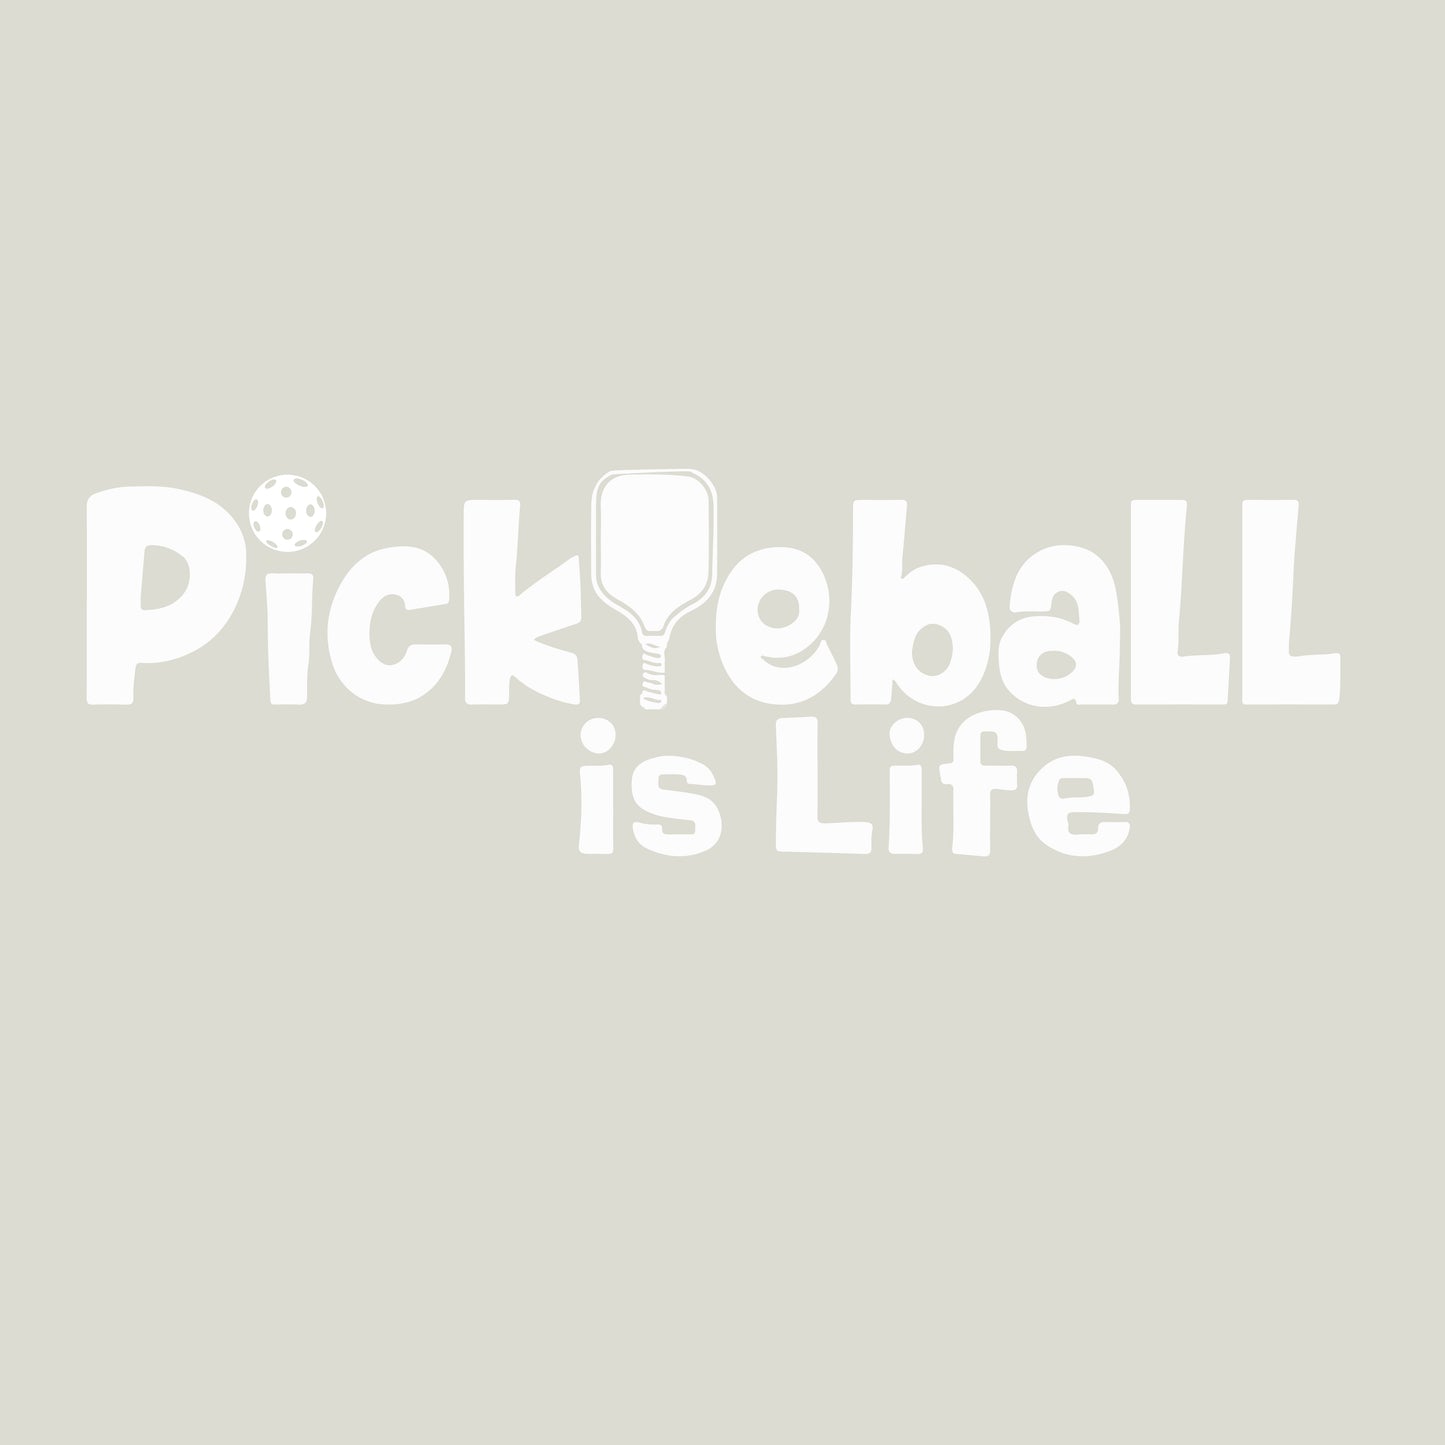 Pickleball Is Life | Women's Short Sleeve V-Neck Pickleball Shirts | 100% Polyester